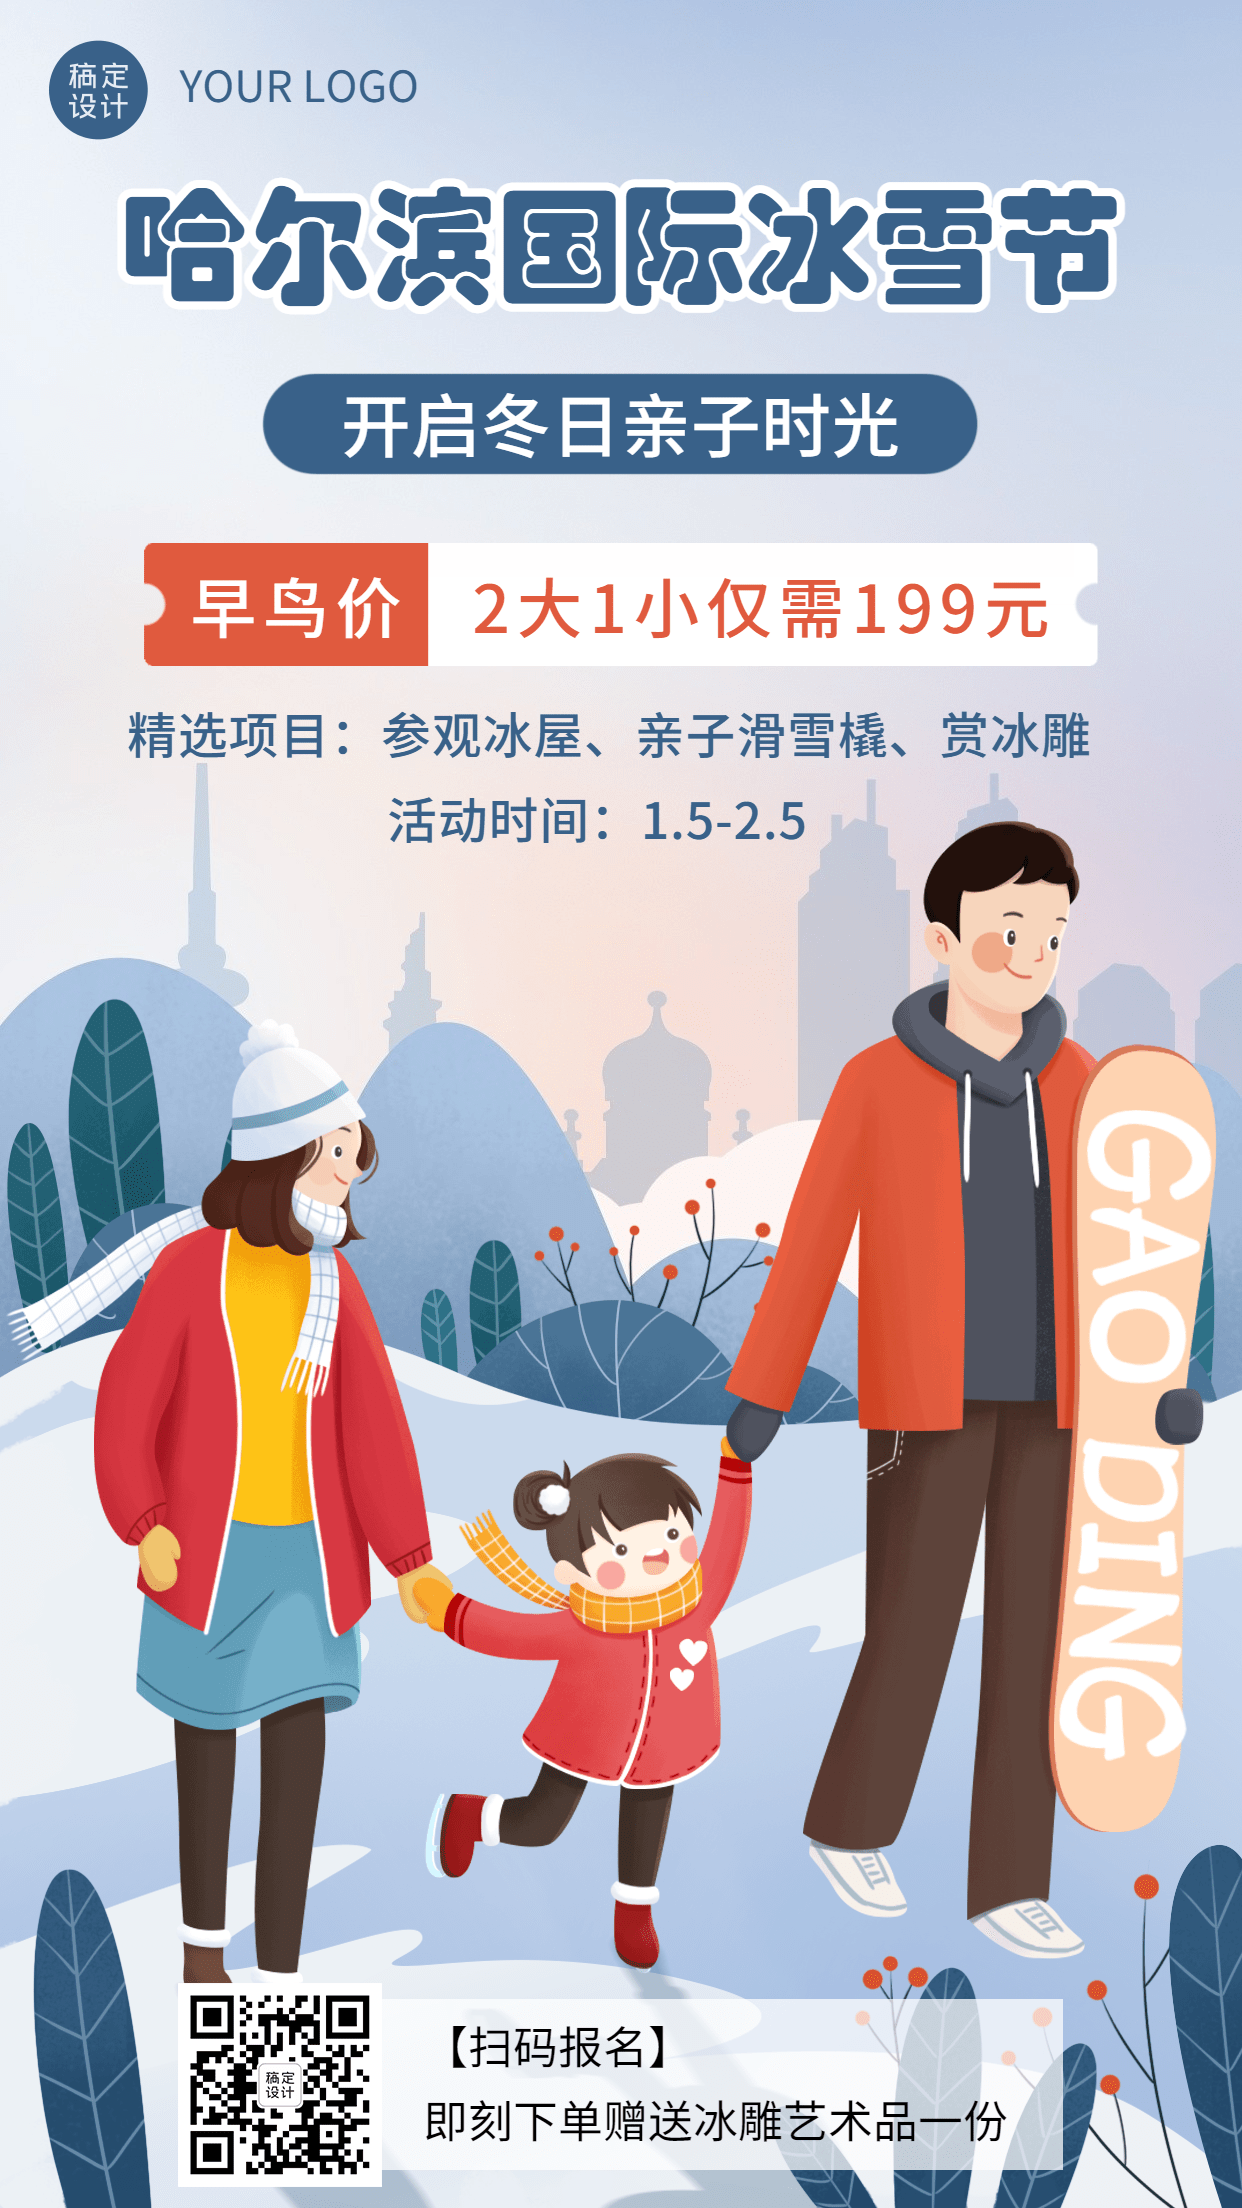 冬季冰雪旅游哈尔滨国际冰雪节活动宣传手绘海报预览效果